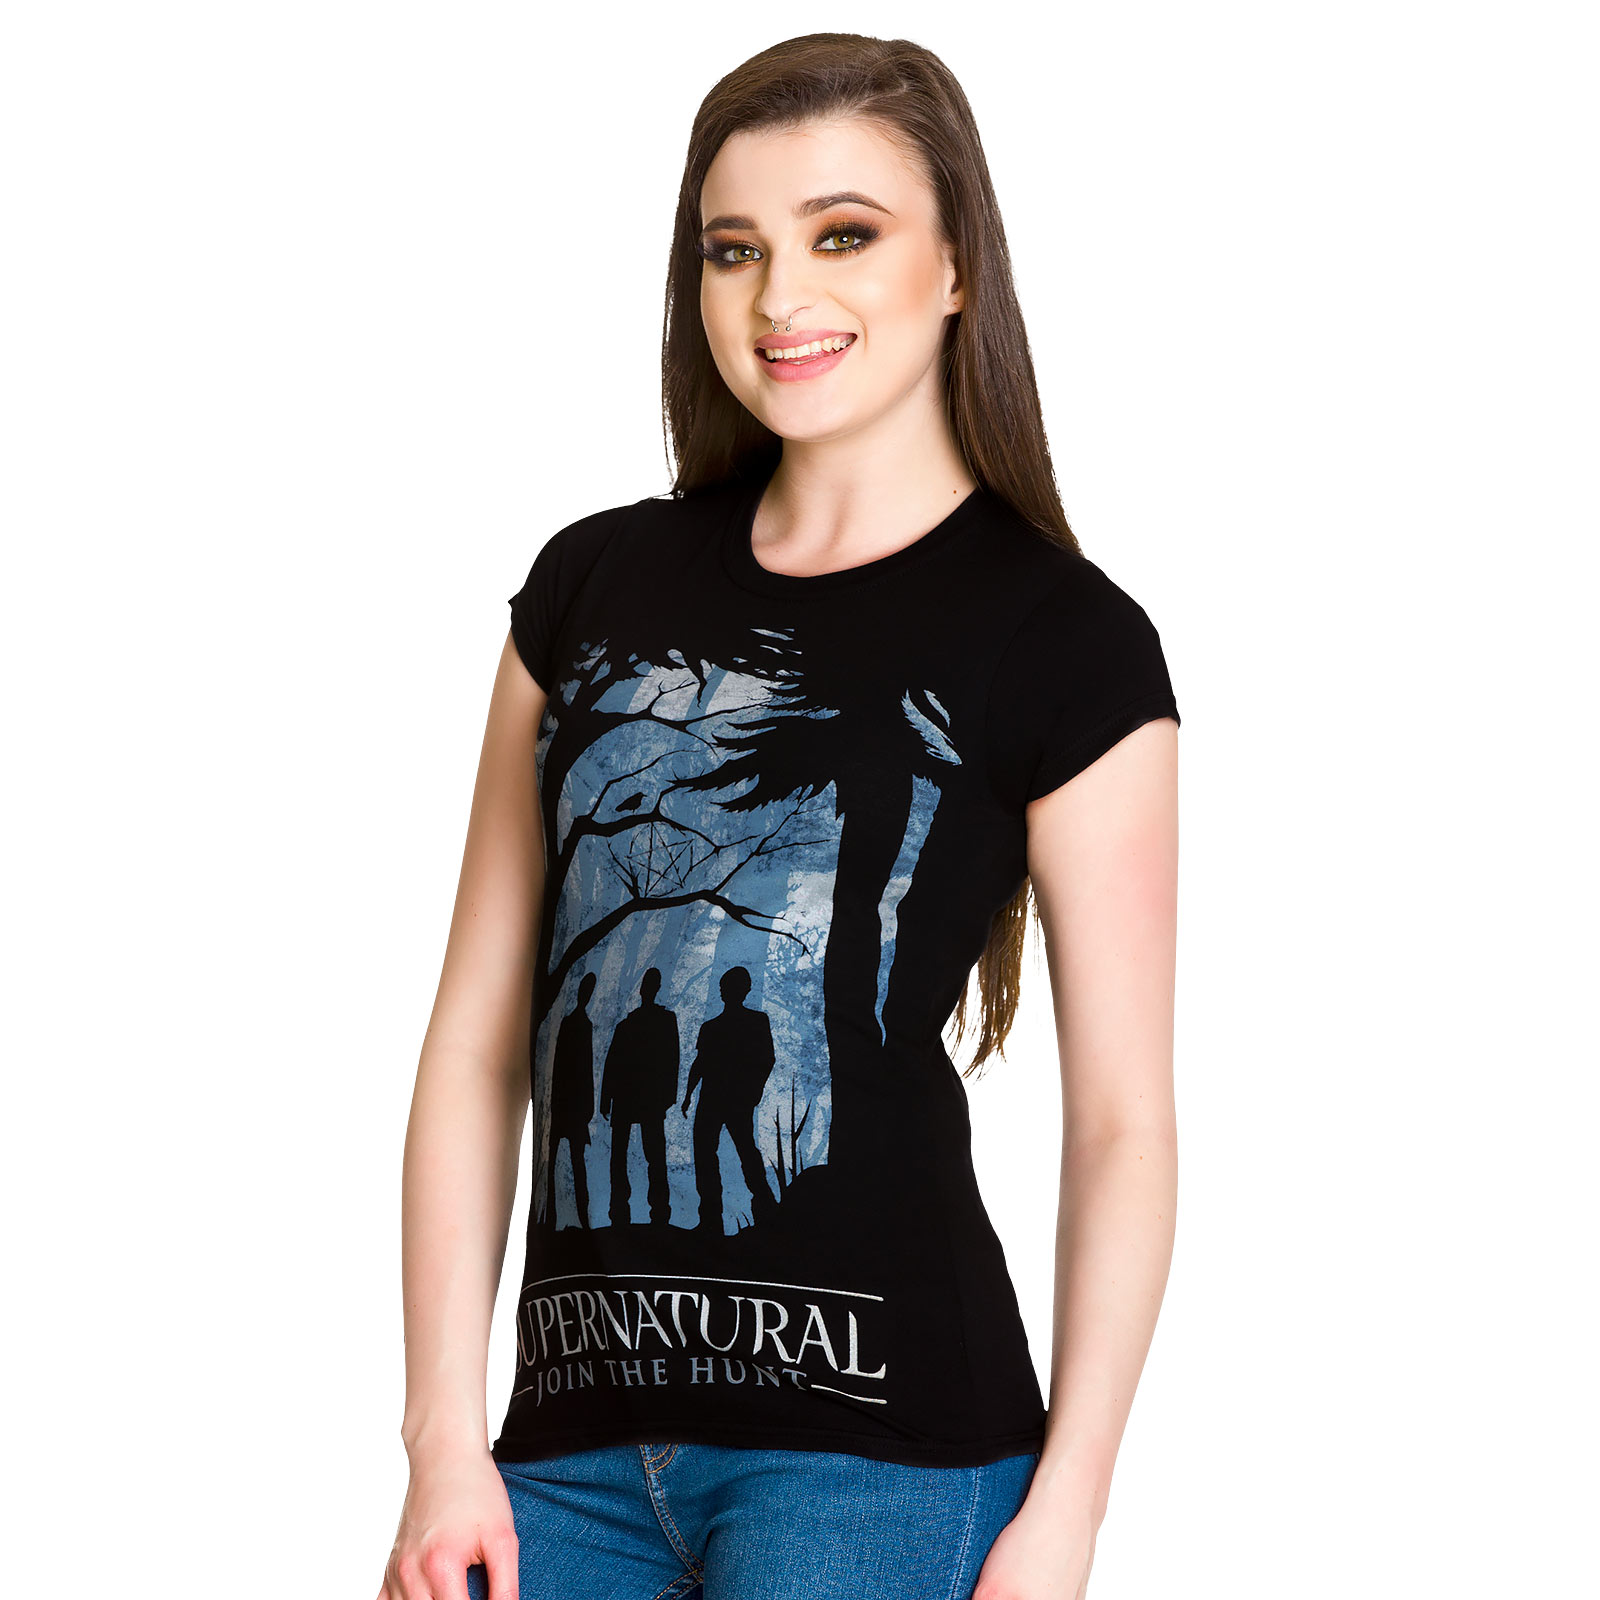 Supernatural - Demon Hunters meisjes shirt zwart